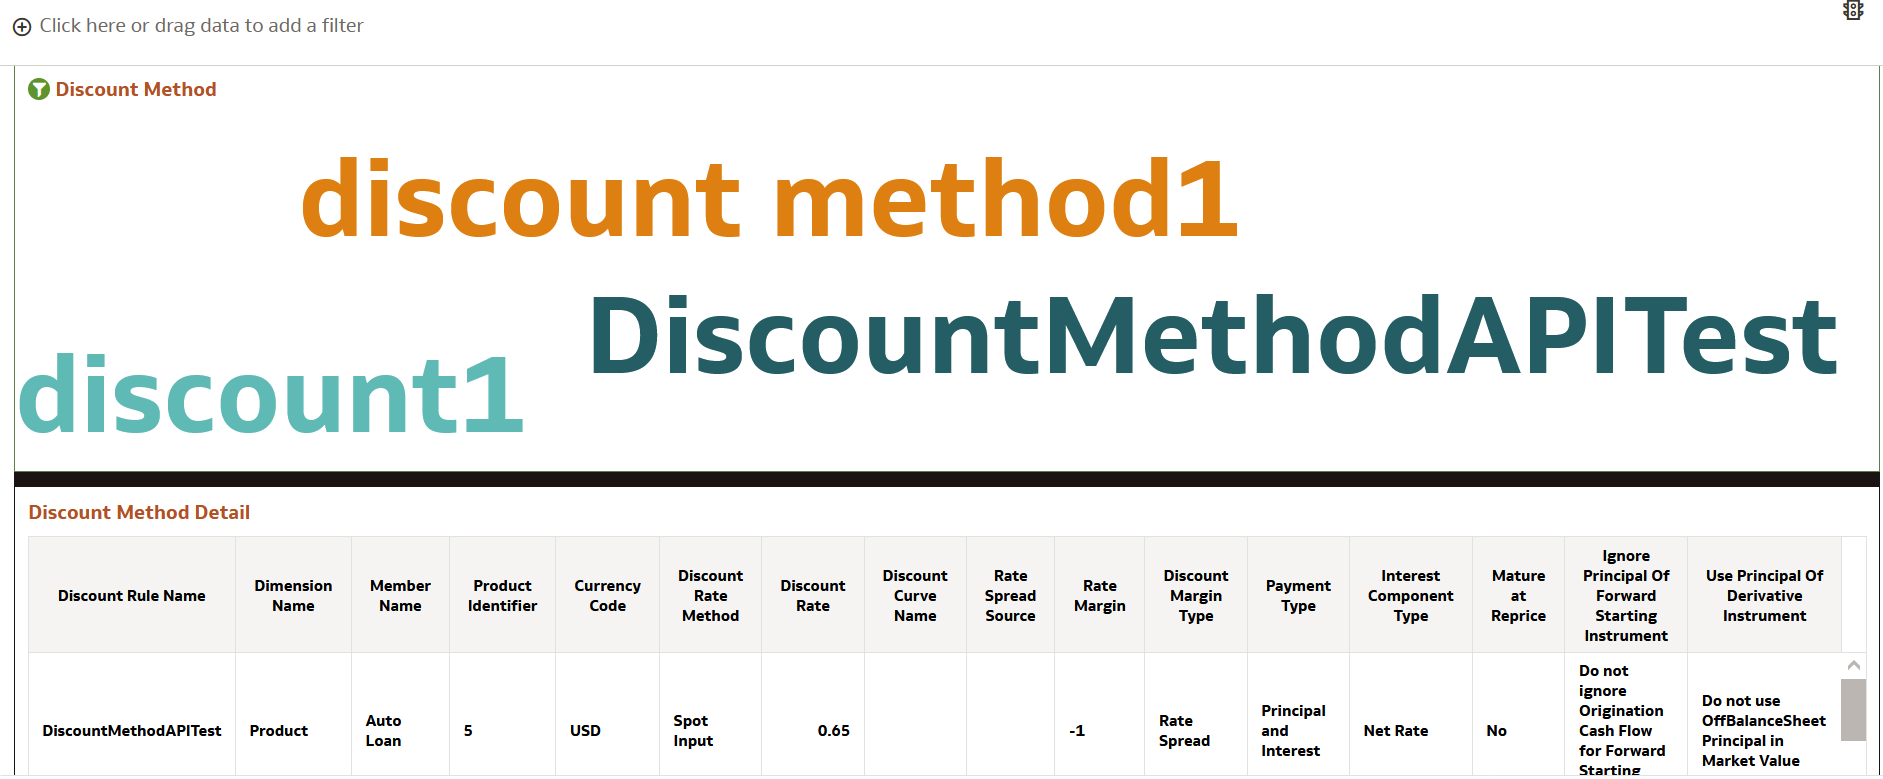 Discount Methods Report